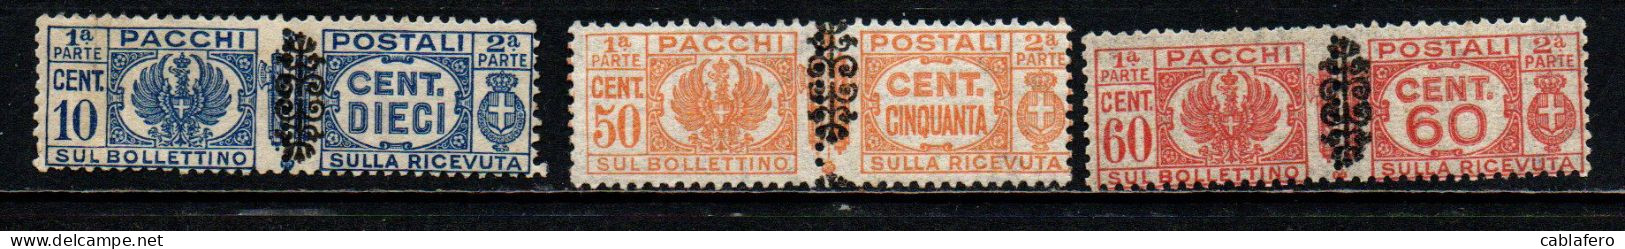 ITALIA LUOGOTENENZA - 1945 - STEMMA E CIFRA CON FREGIO NERO SUI FASCI - MNH - Colis-postaux